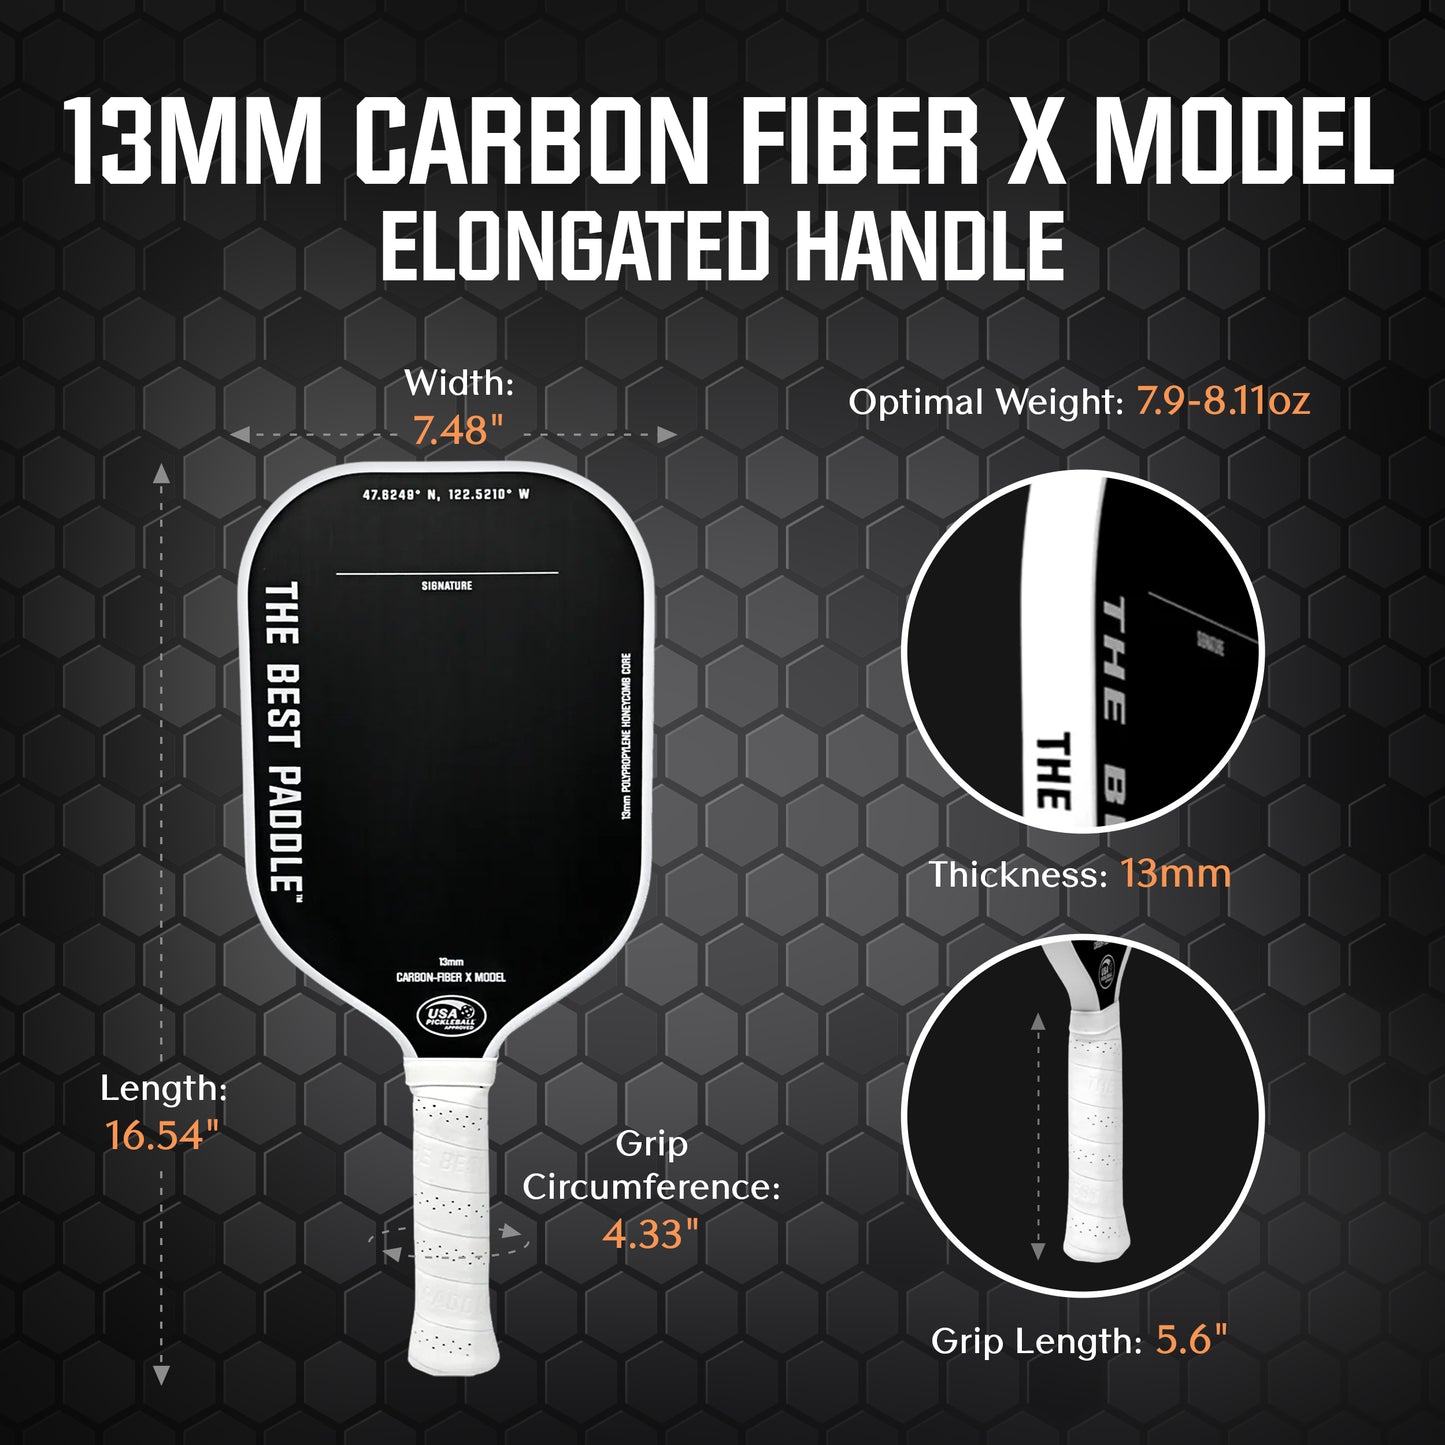 13mm Carbon Fiber X Model (Elongated Handle)